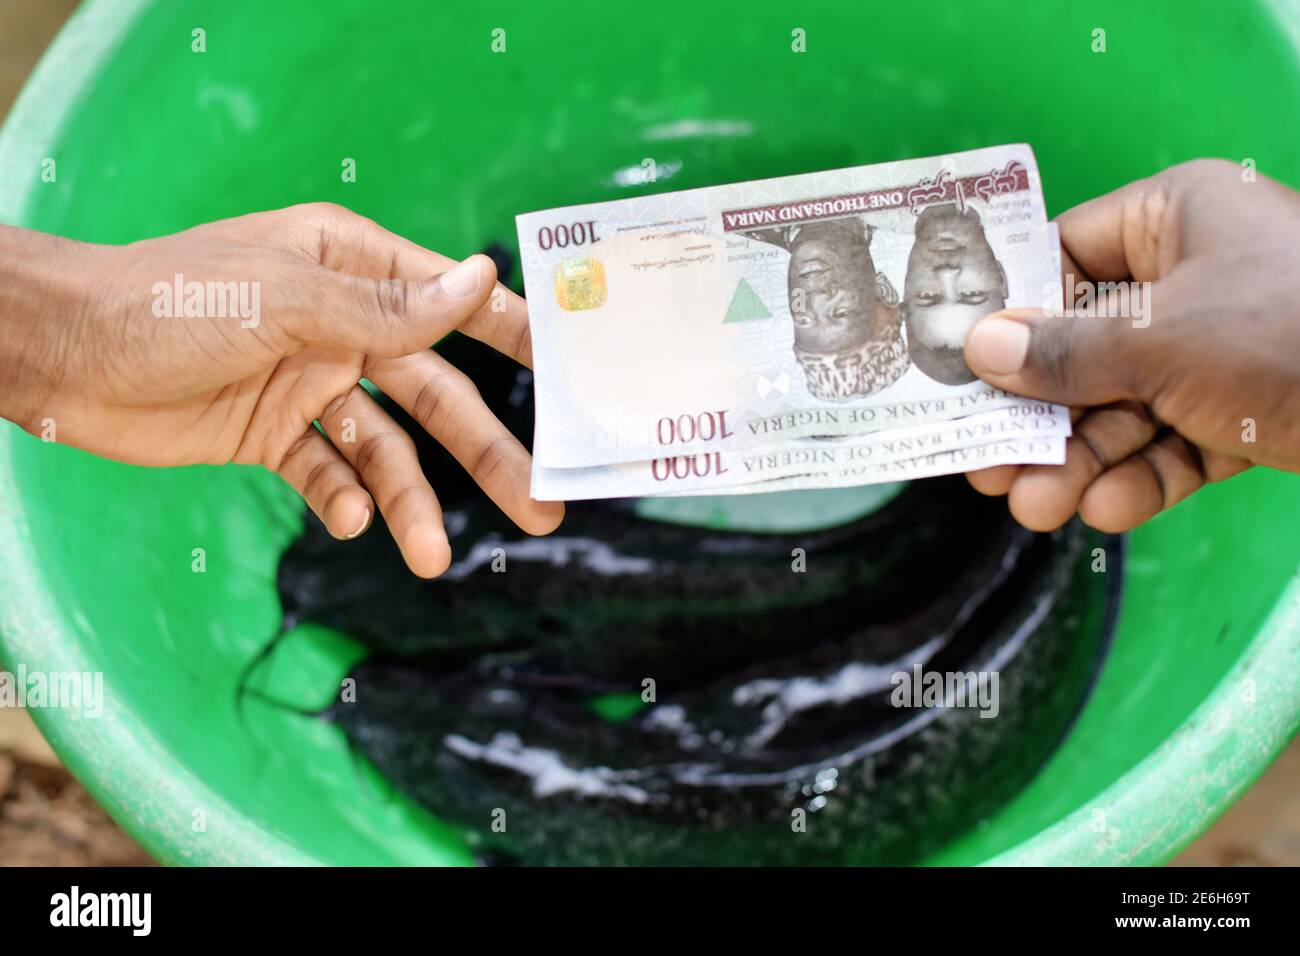 Deux mains tenant et échangeant des billets de naira nigérians tout en achetant ou en faisant des transactions commerciales avec du poisson chat dans un bol vert. Banque D'Images